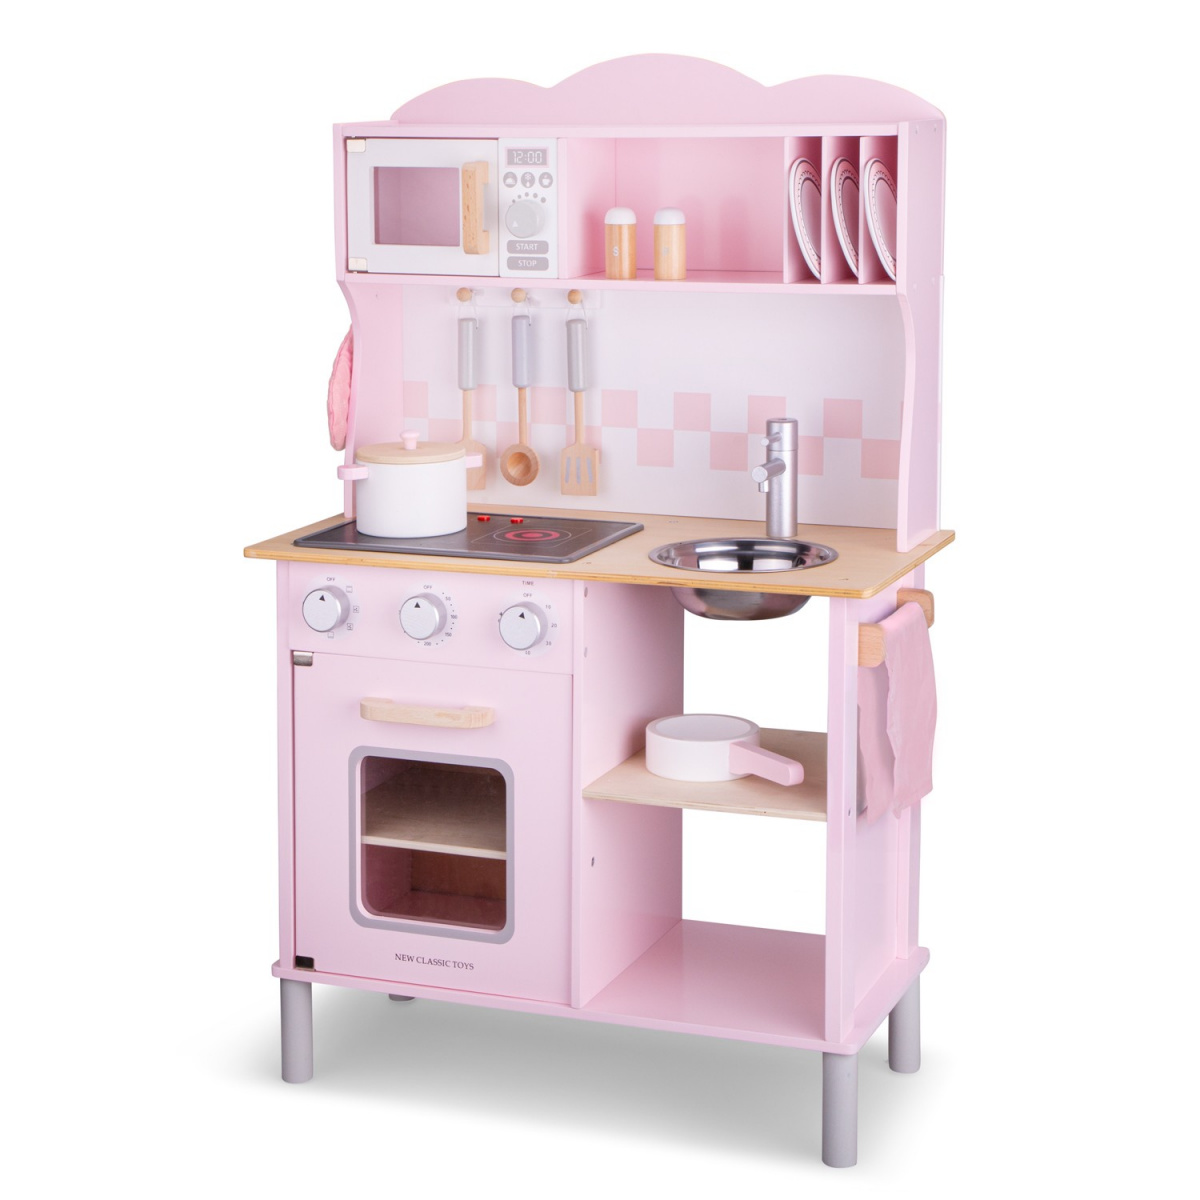 Ігровий набір New Classic Toys Кухня Modern, рожевий (11067) - фото 2